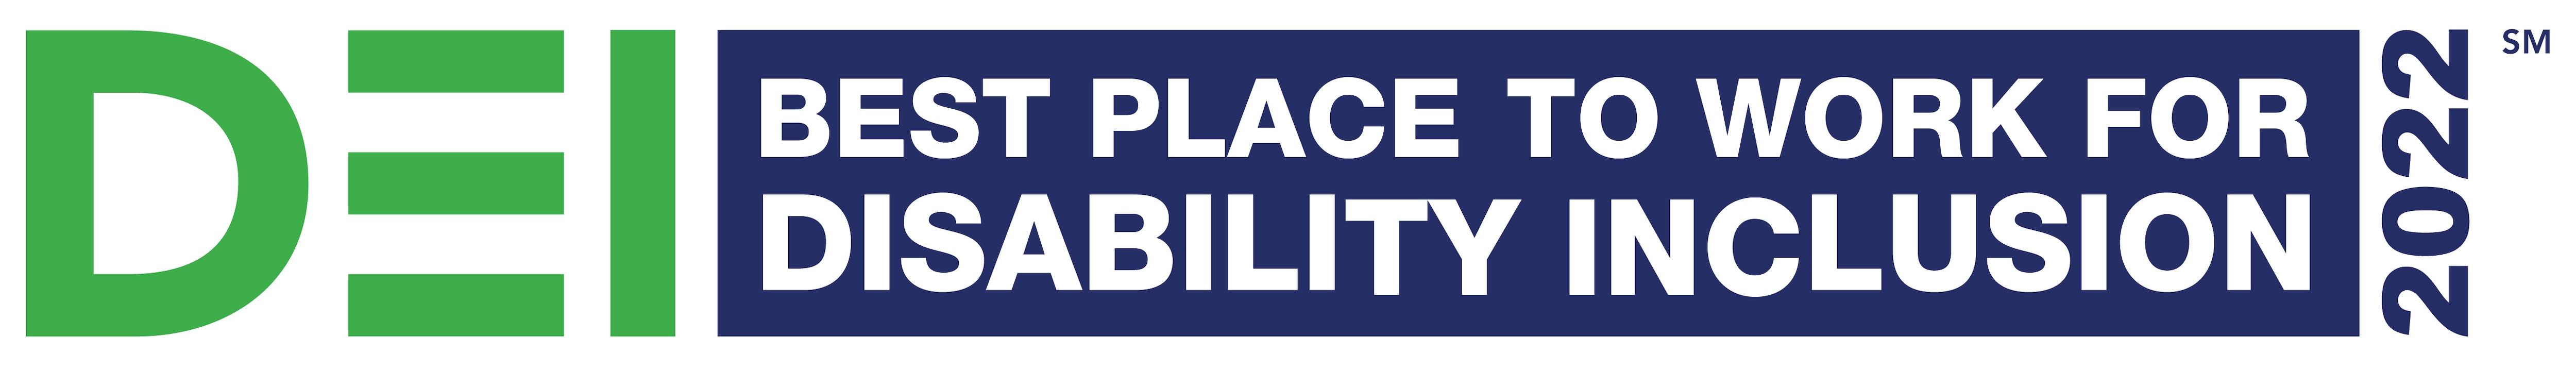 Disability Equality Index Logo